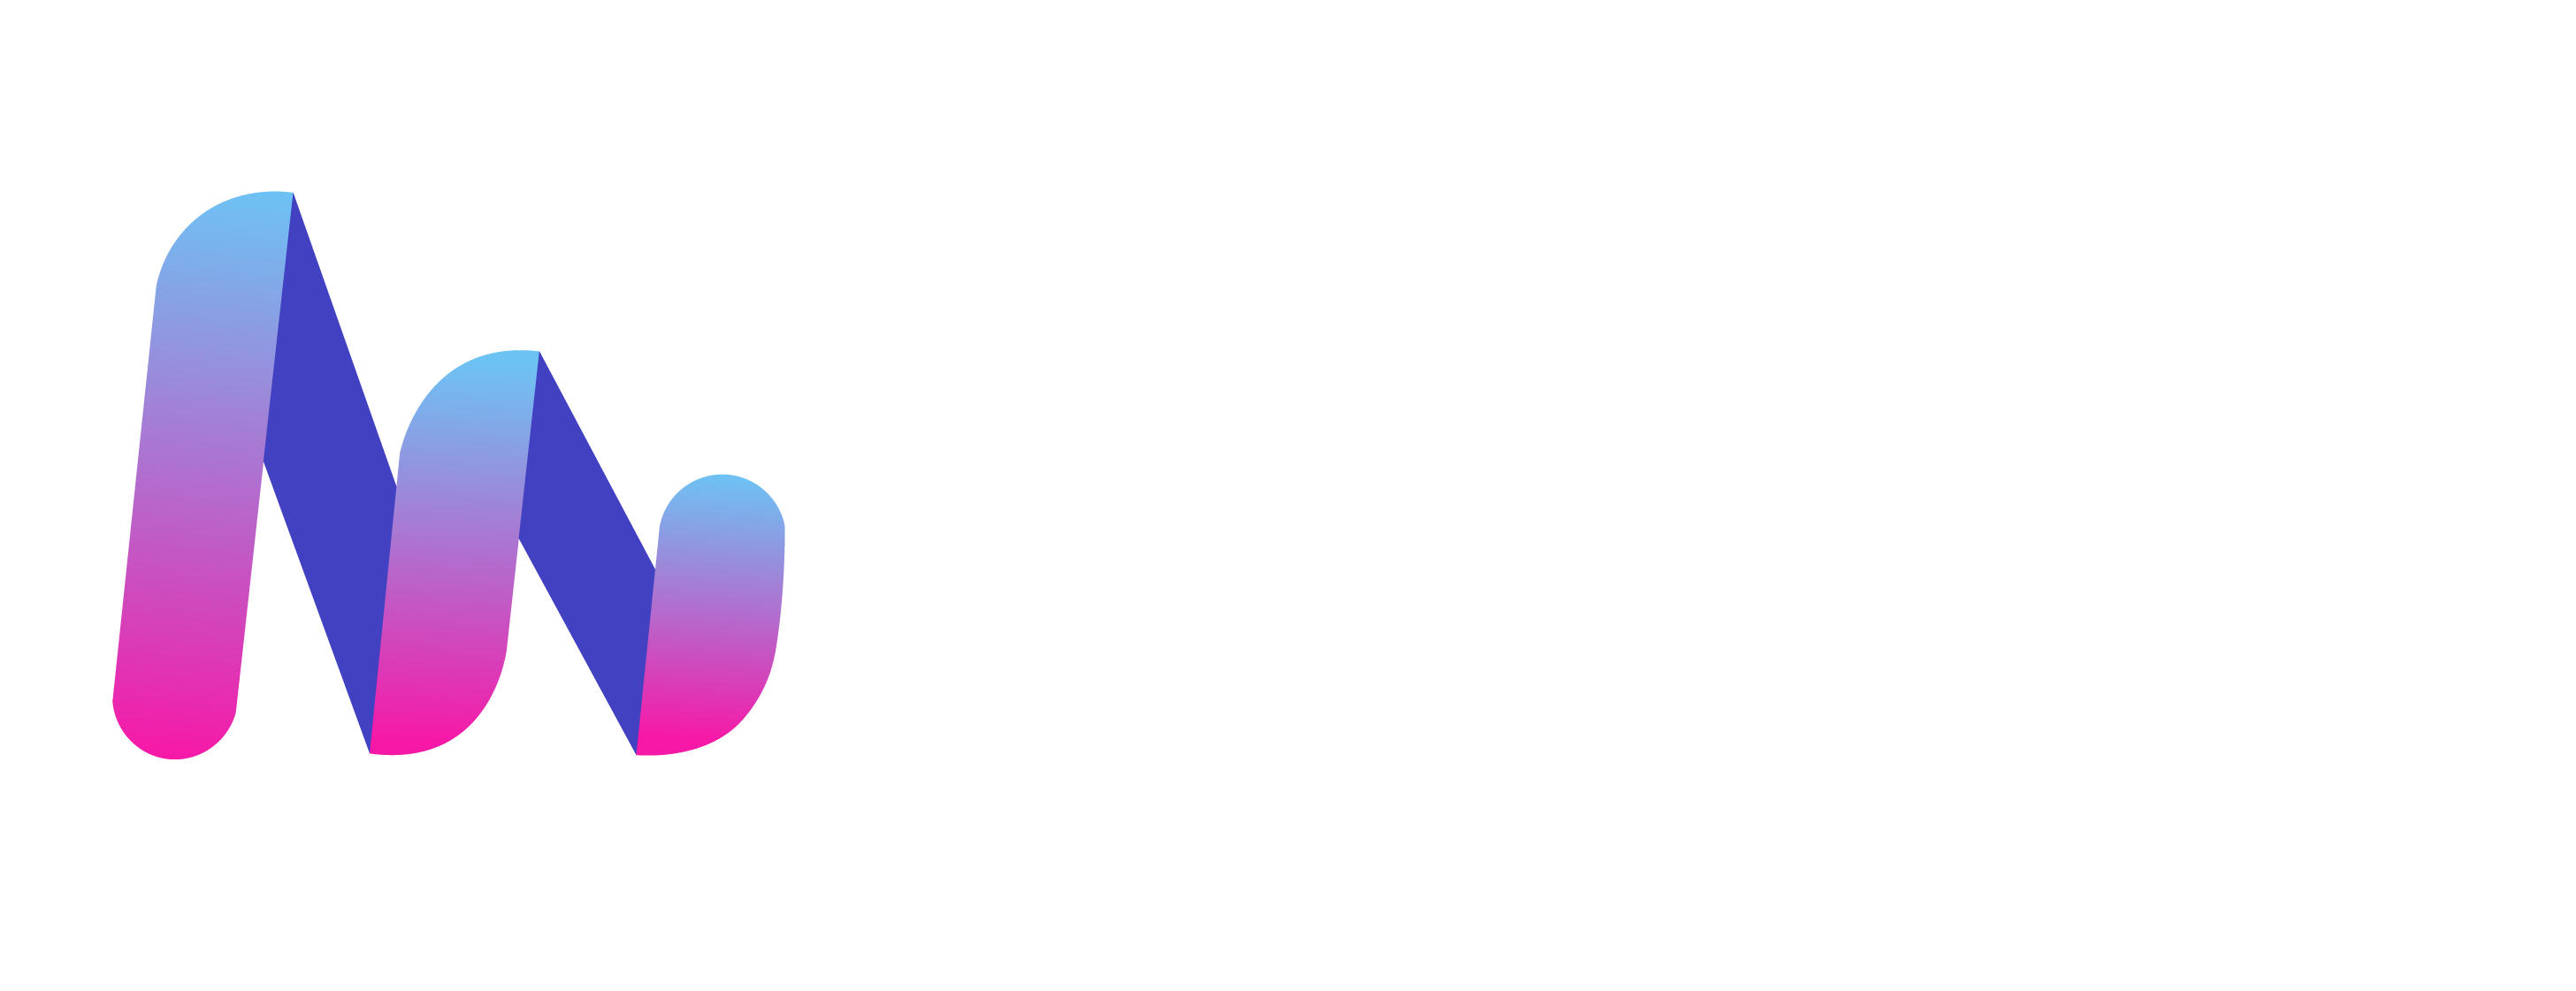 Chile Inscripciones